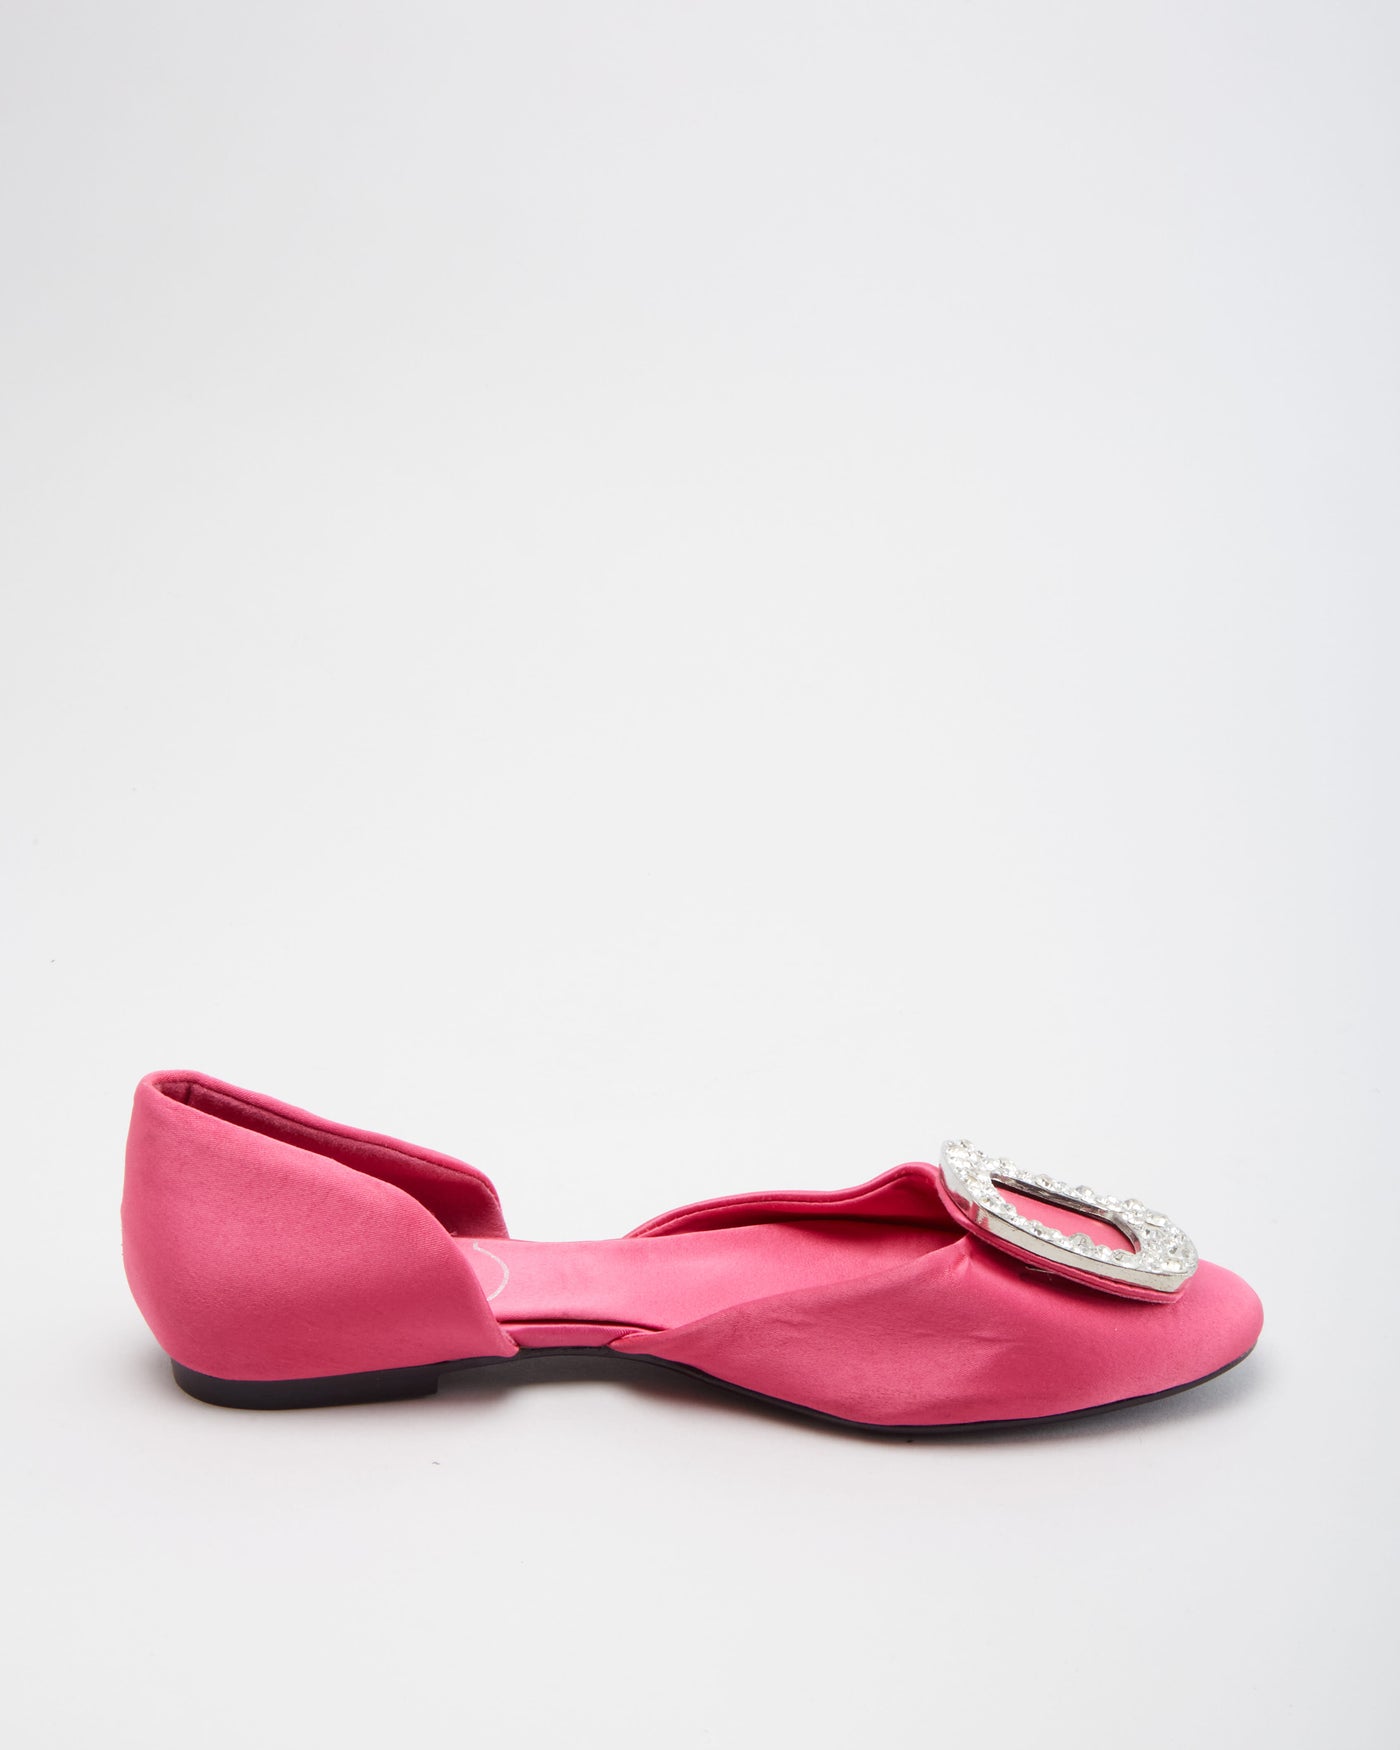 Roger Vivier Pink Satin Shoes - UK 2